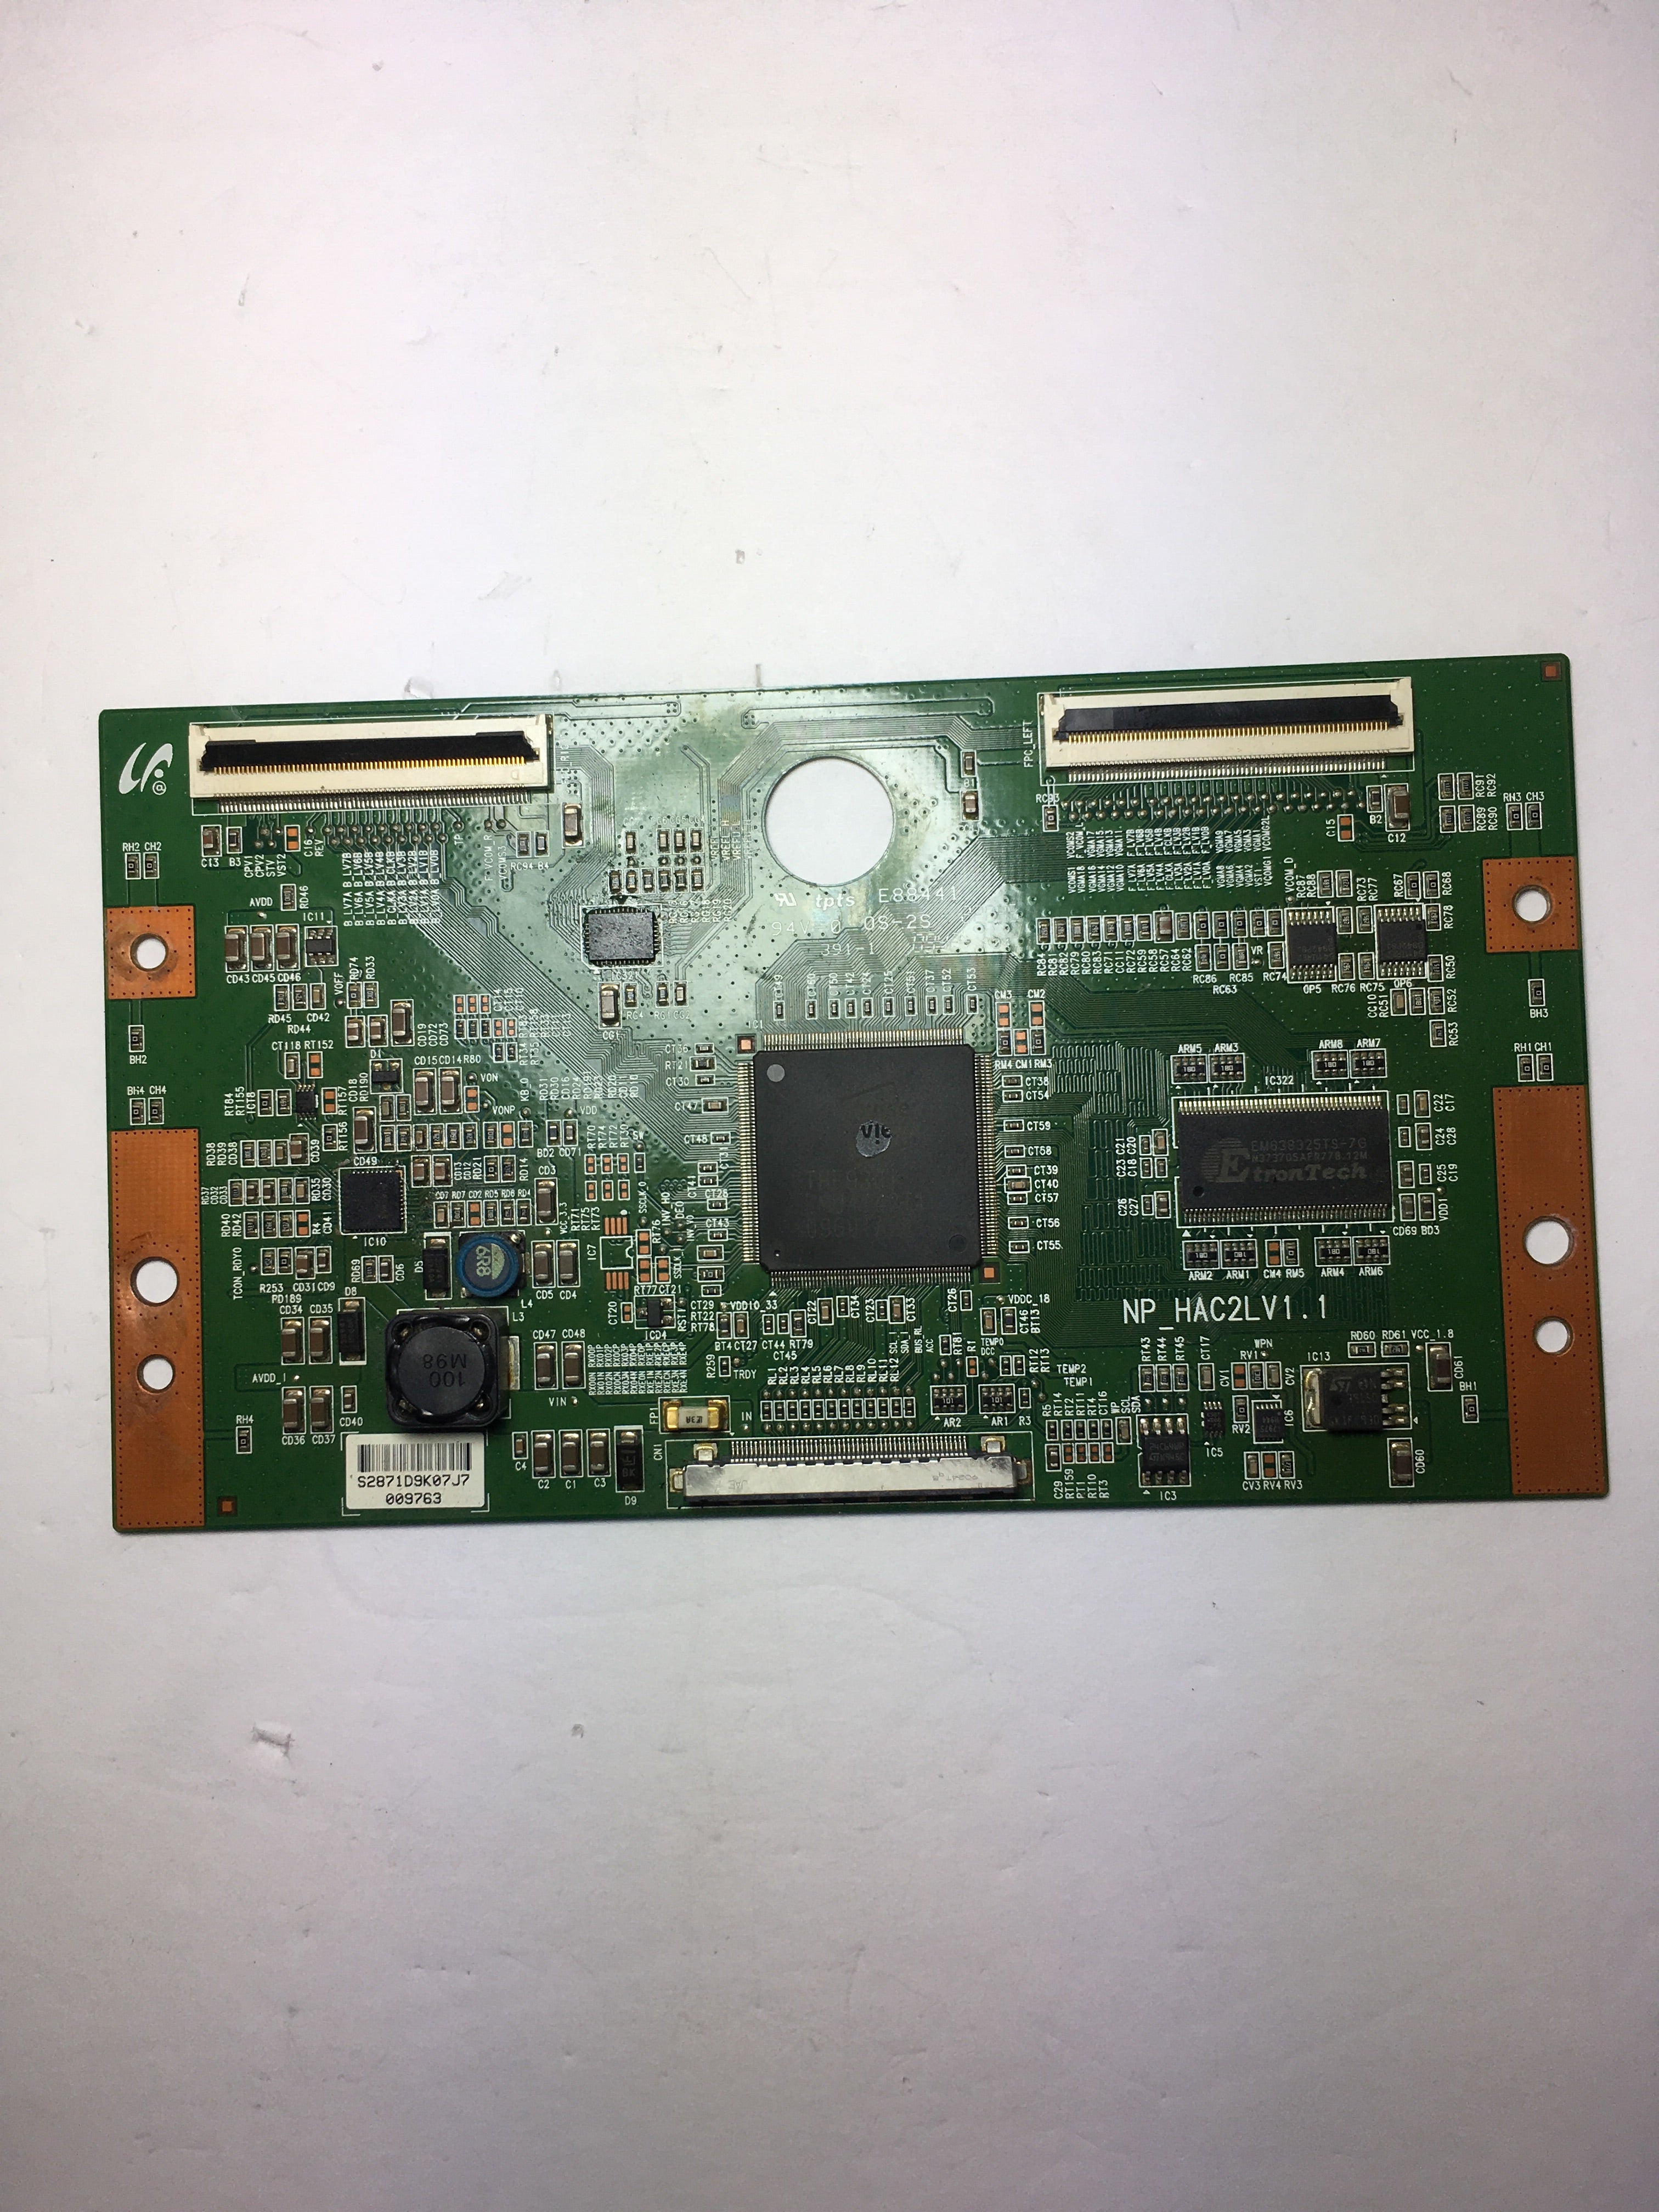 Samsung LJ94-02871D (NP_HAC2LV1.1) T-Con Board